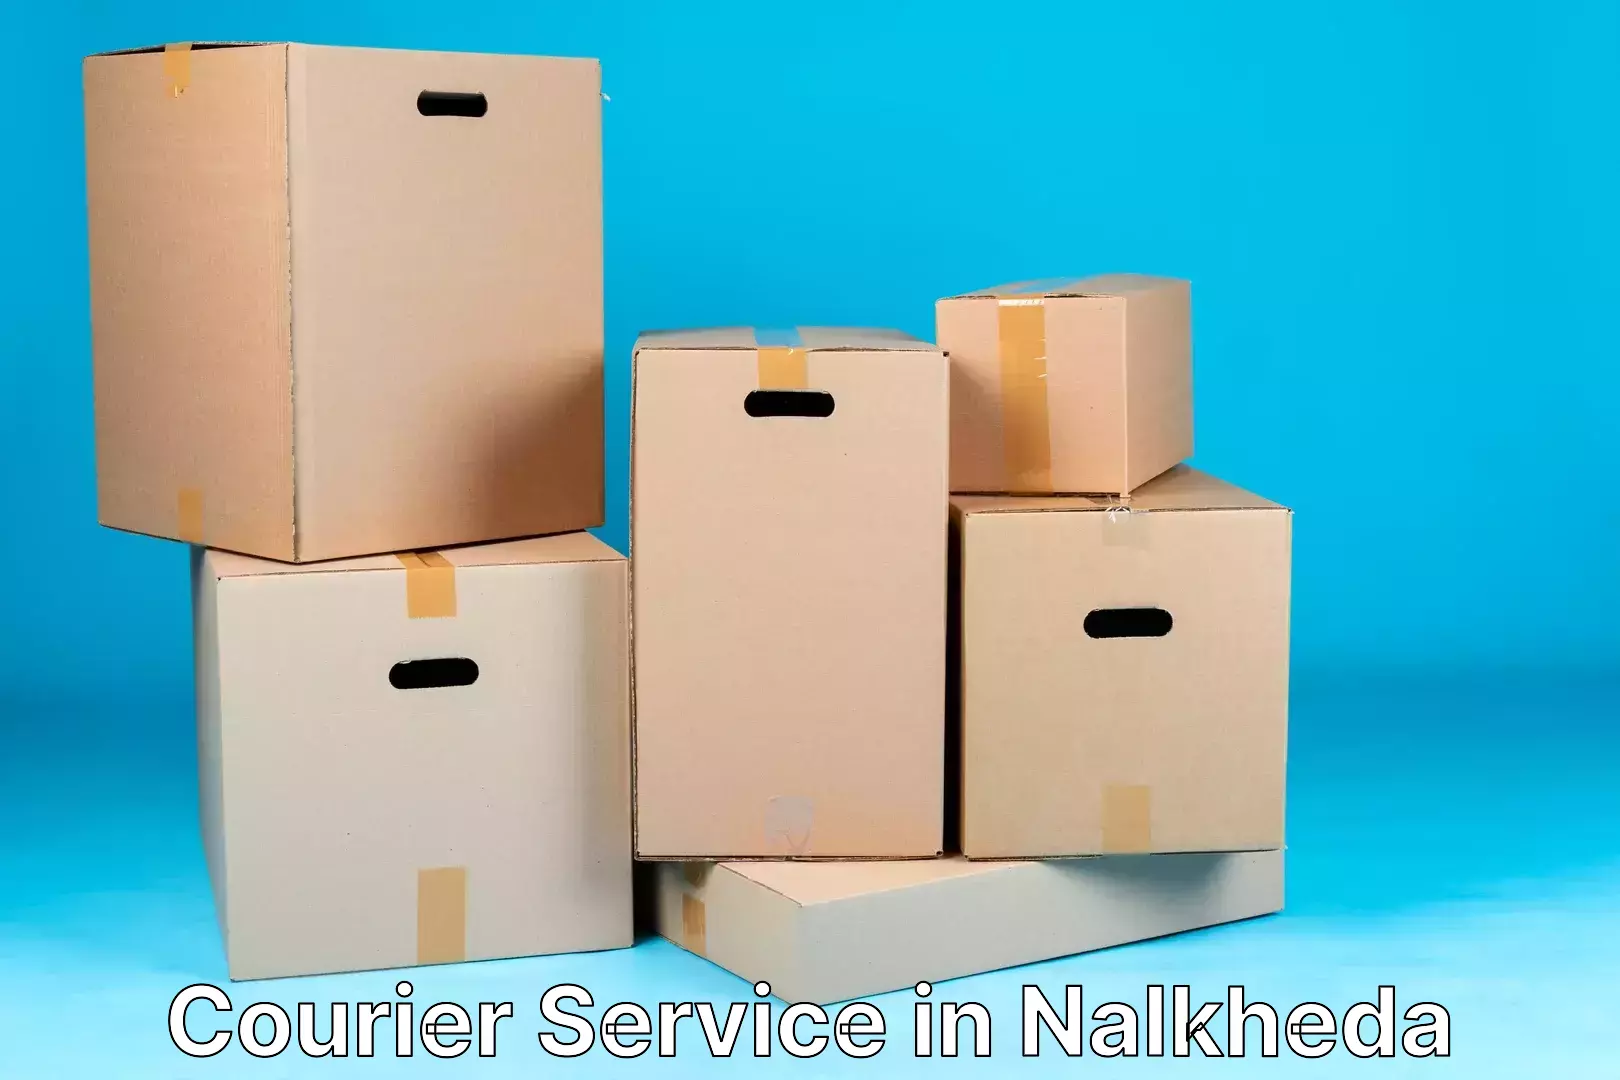 Efficient parcel tracking in Nalkheda